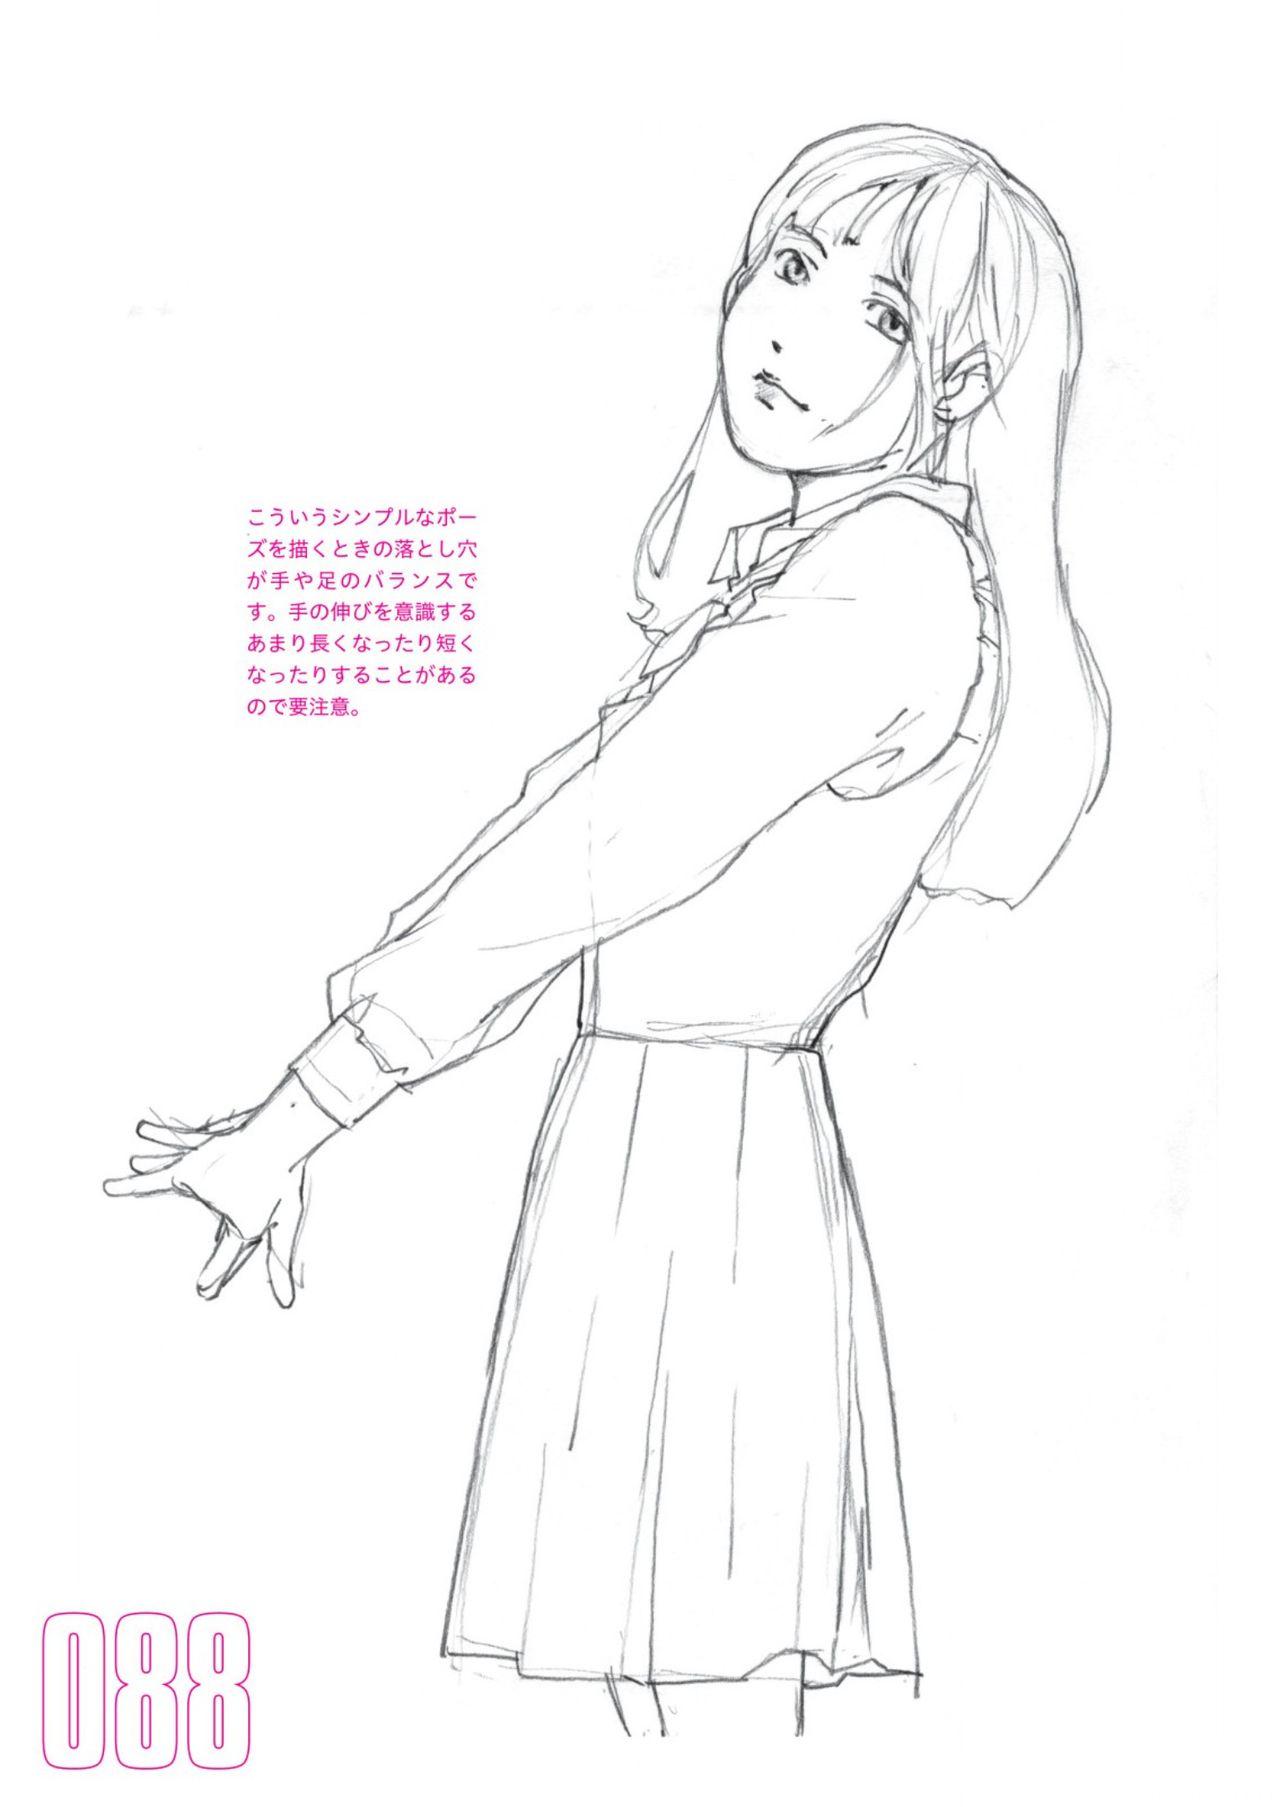 Toru Yoshida Tips for drawing women in 10 minutes 270 Uniforms 89